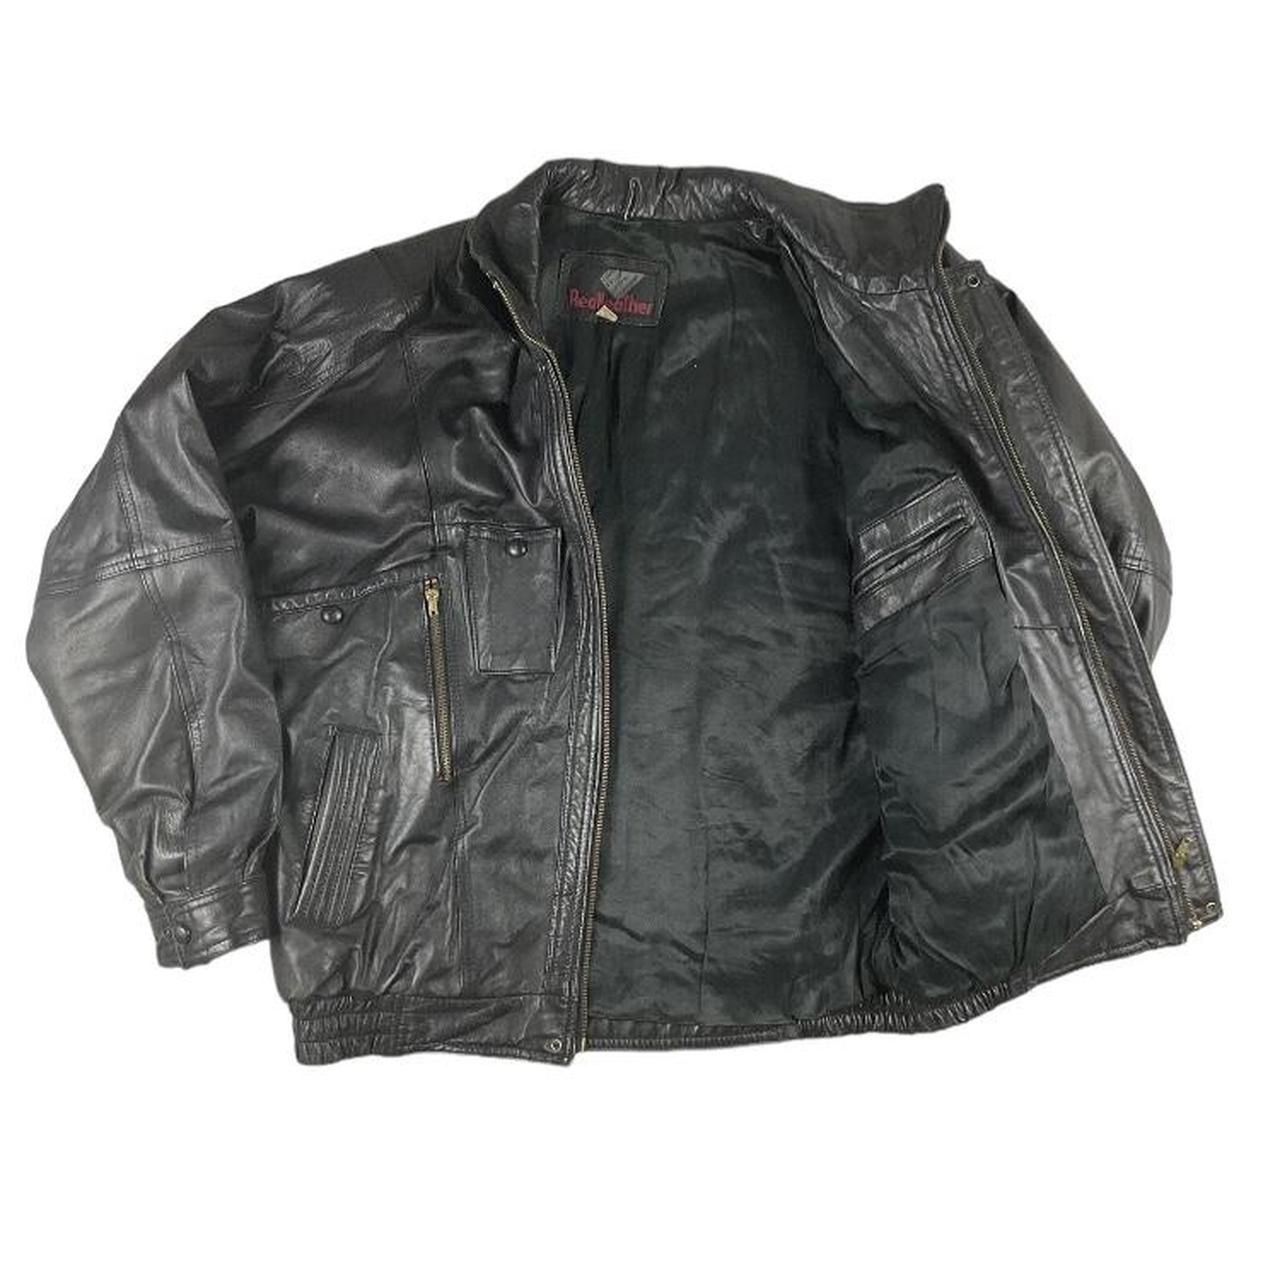 Vintage black leather bomber jacket Size L seen on... - Depop